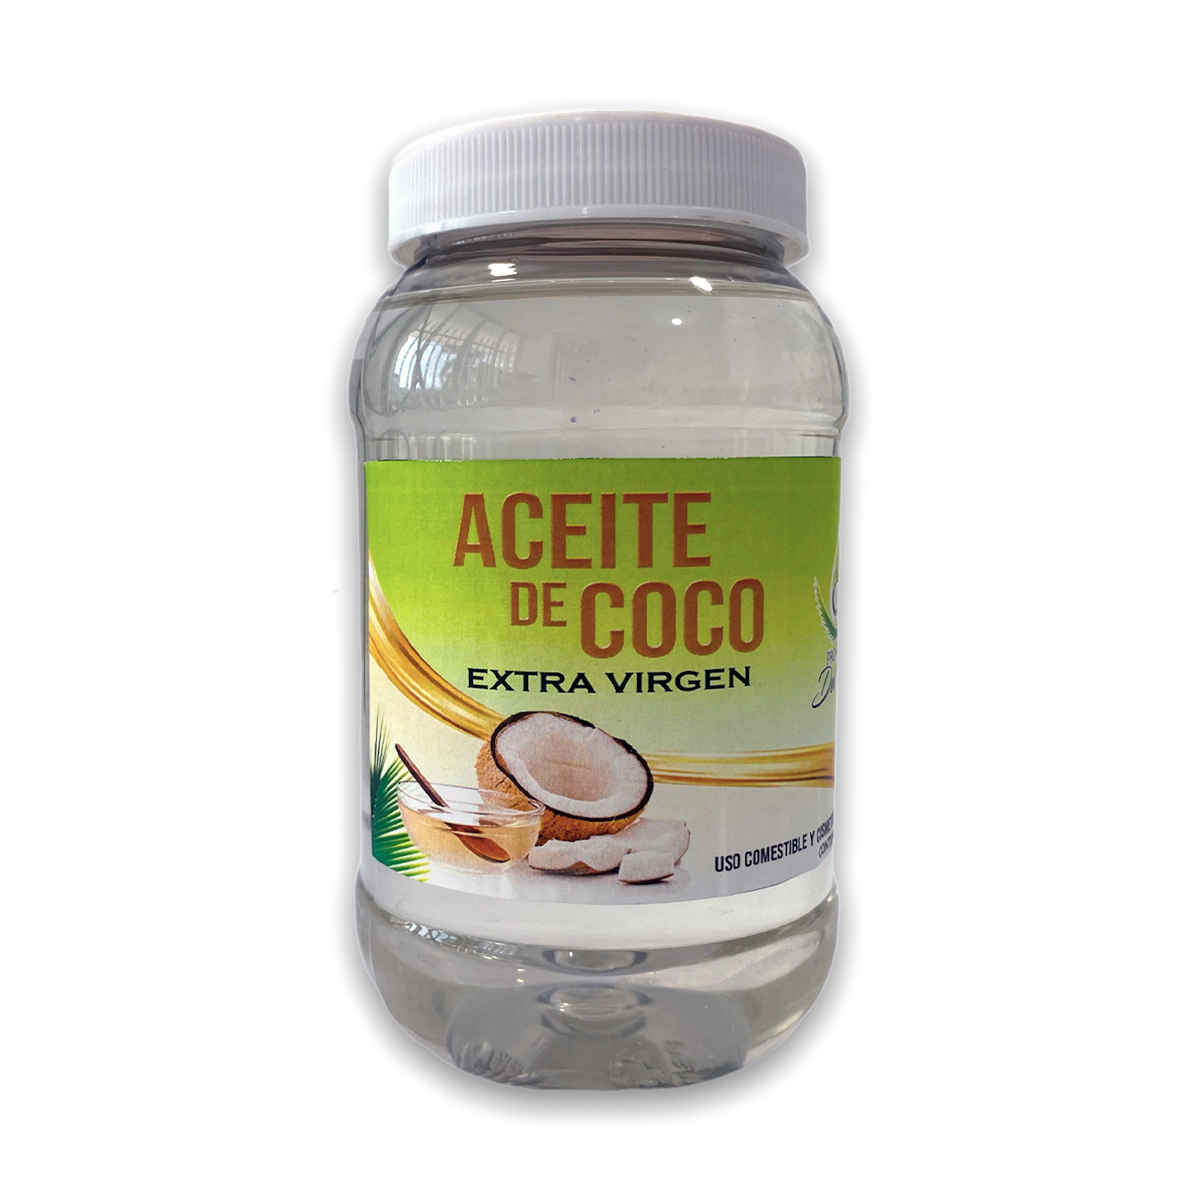 Aceite de Coco. 125ml, Pro-Art Del Rio - Tienda Hecho en Veracruz